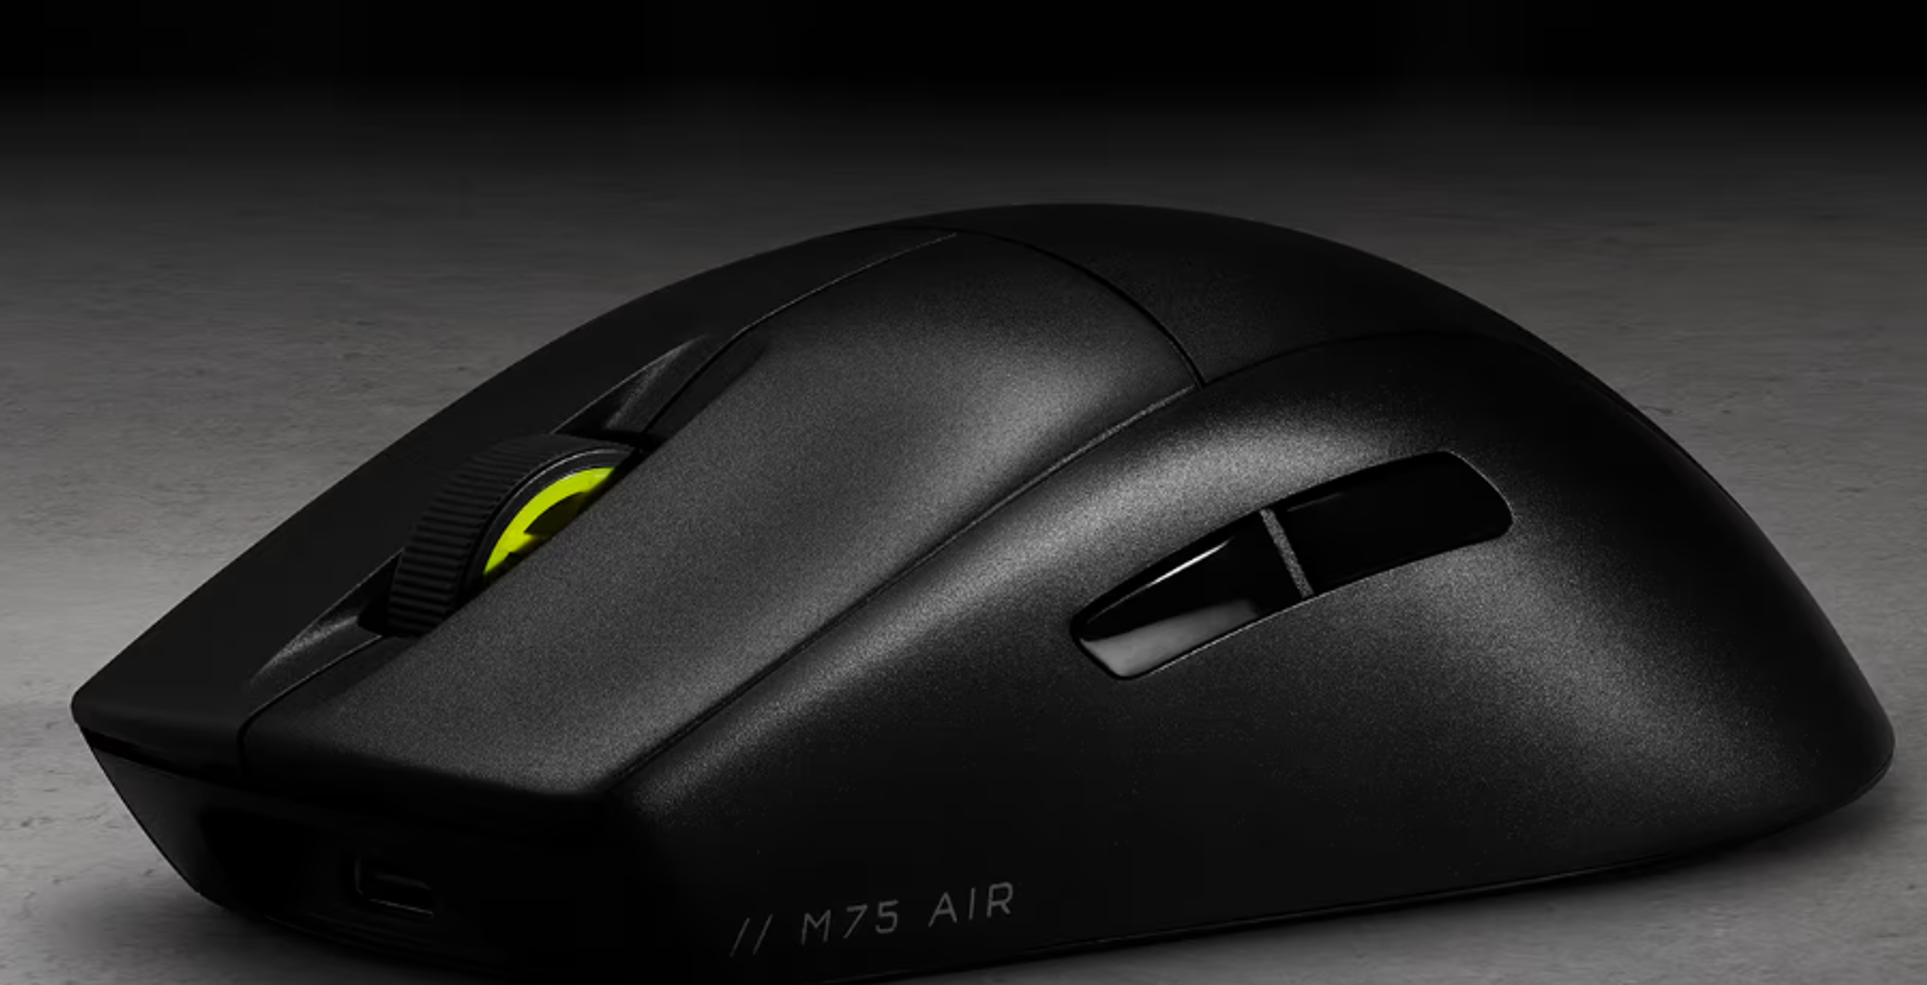 Corsair M75 AIR, la souris ultra légère parfaite pour le gaming ? Notre test